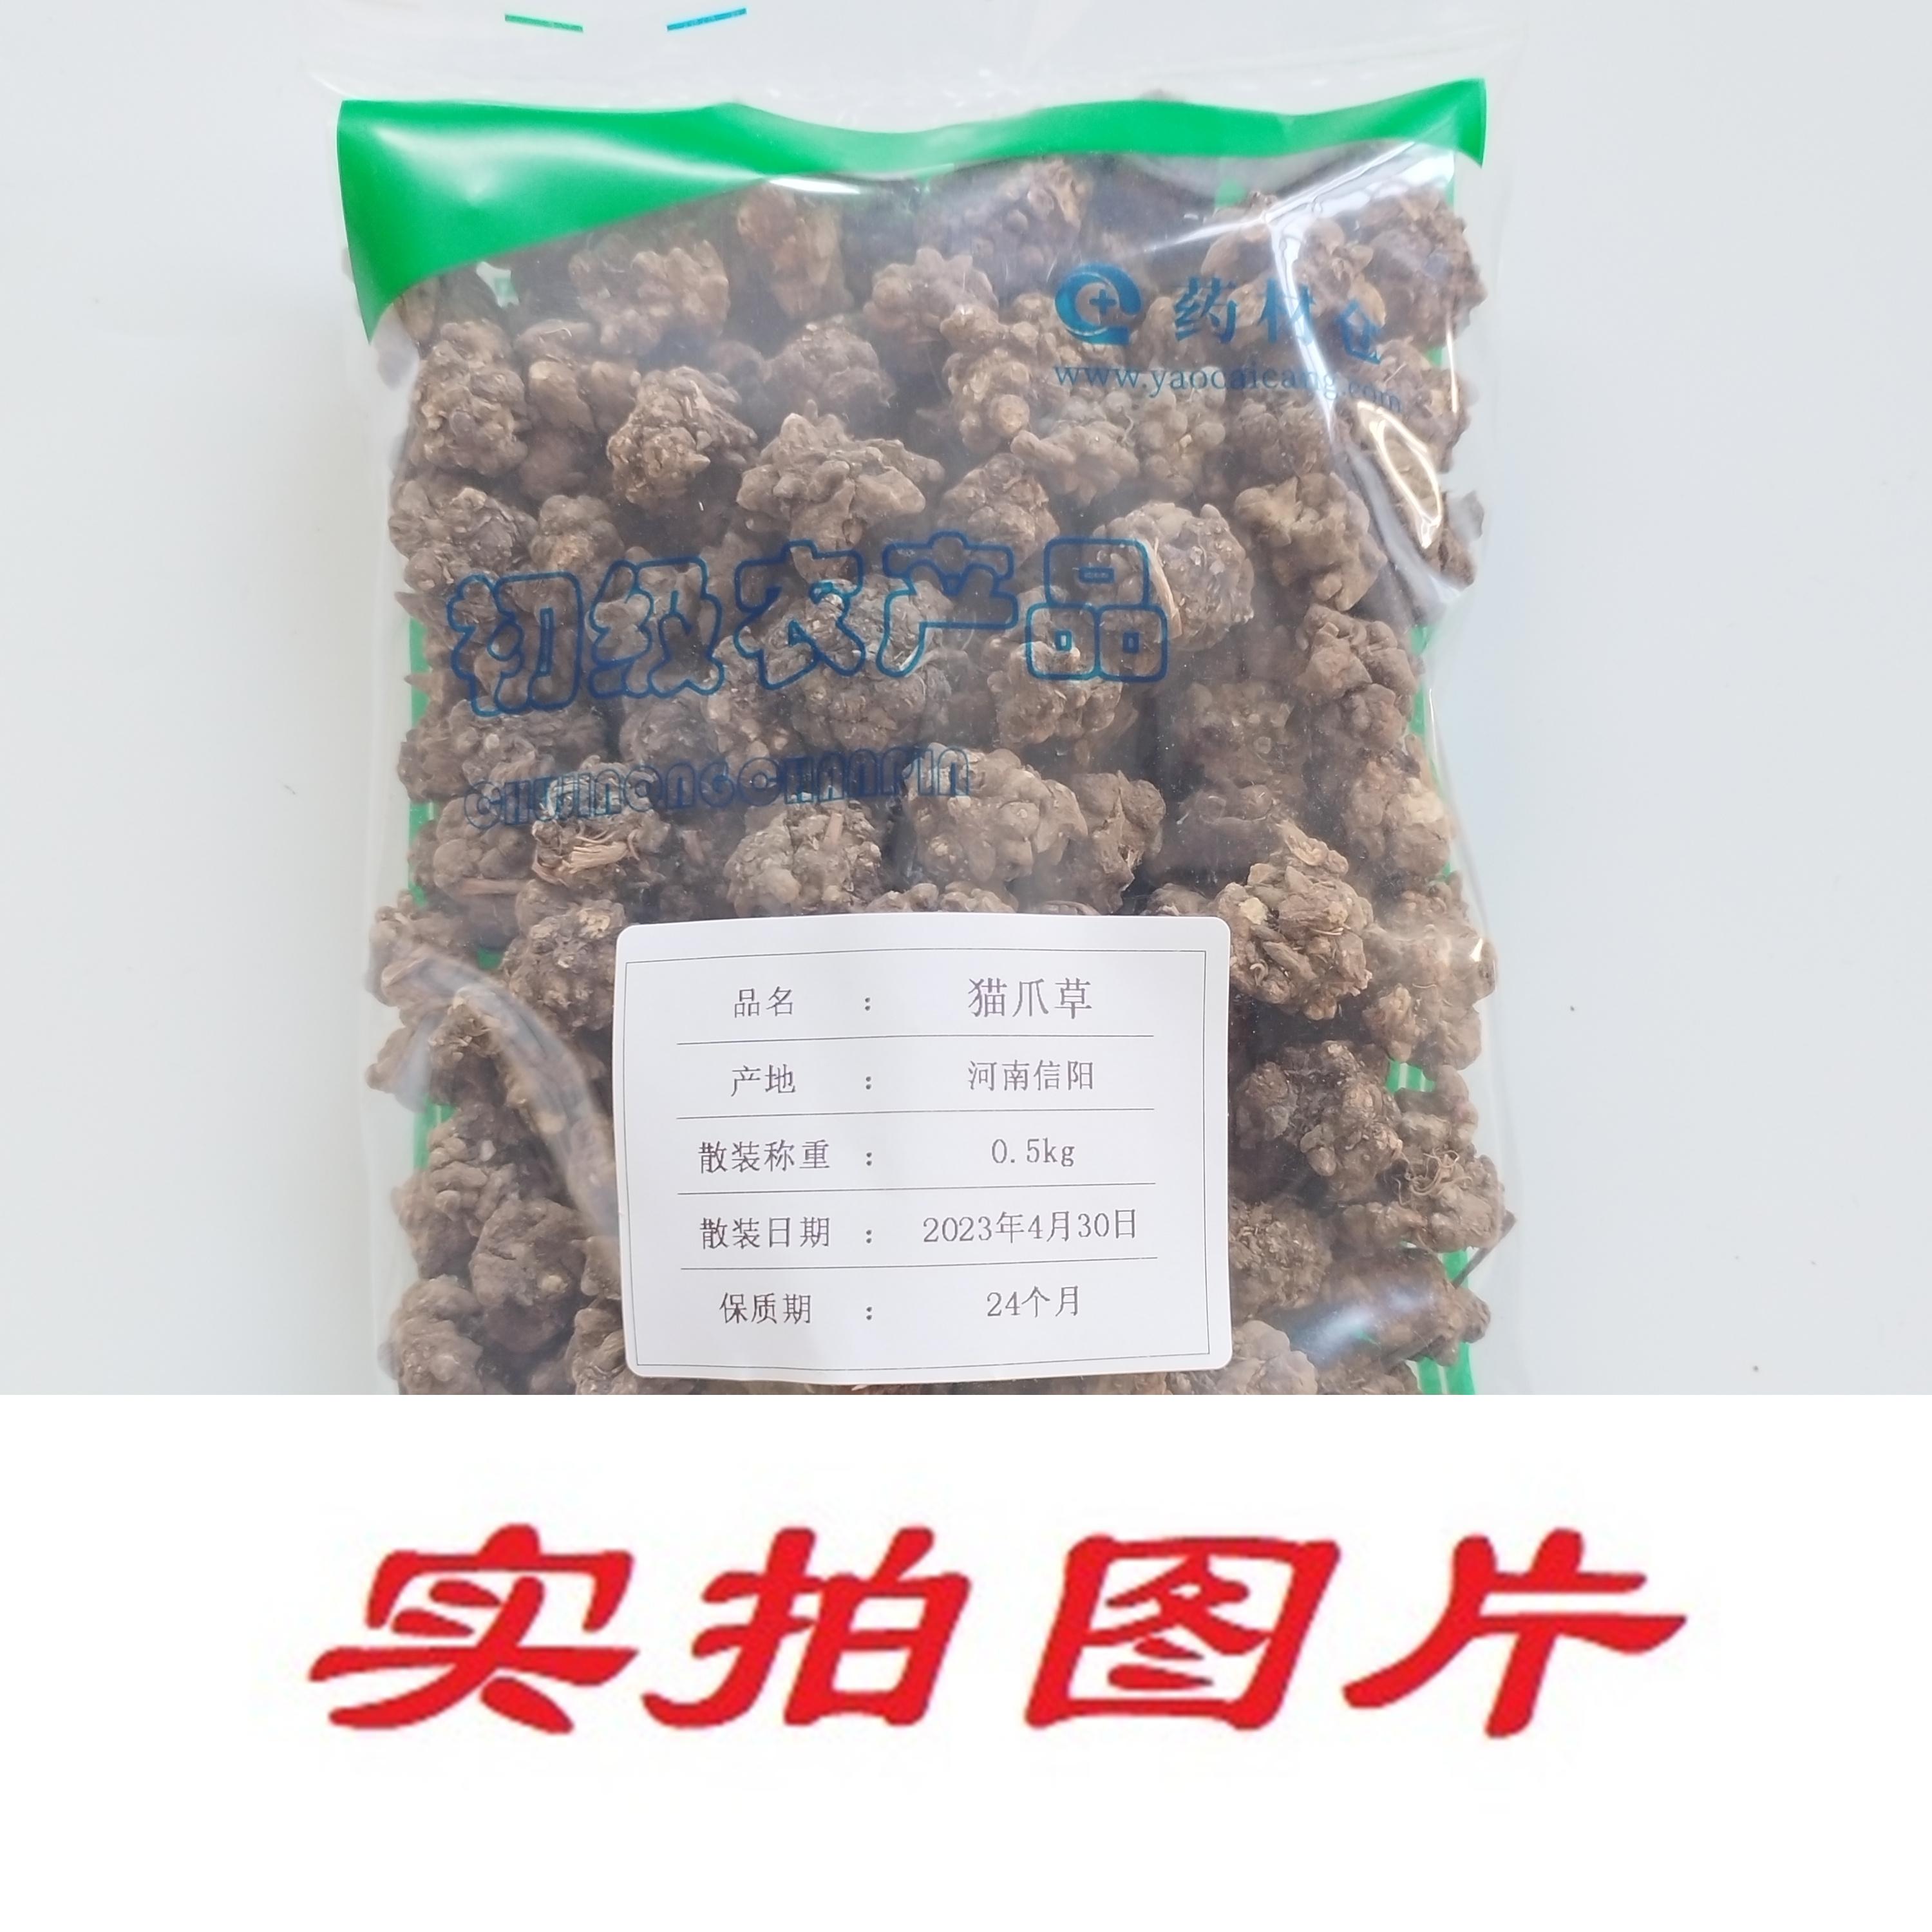 【】猫爪草0.5kg-农副产品